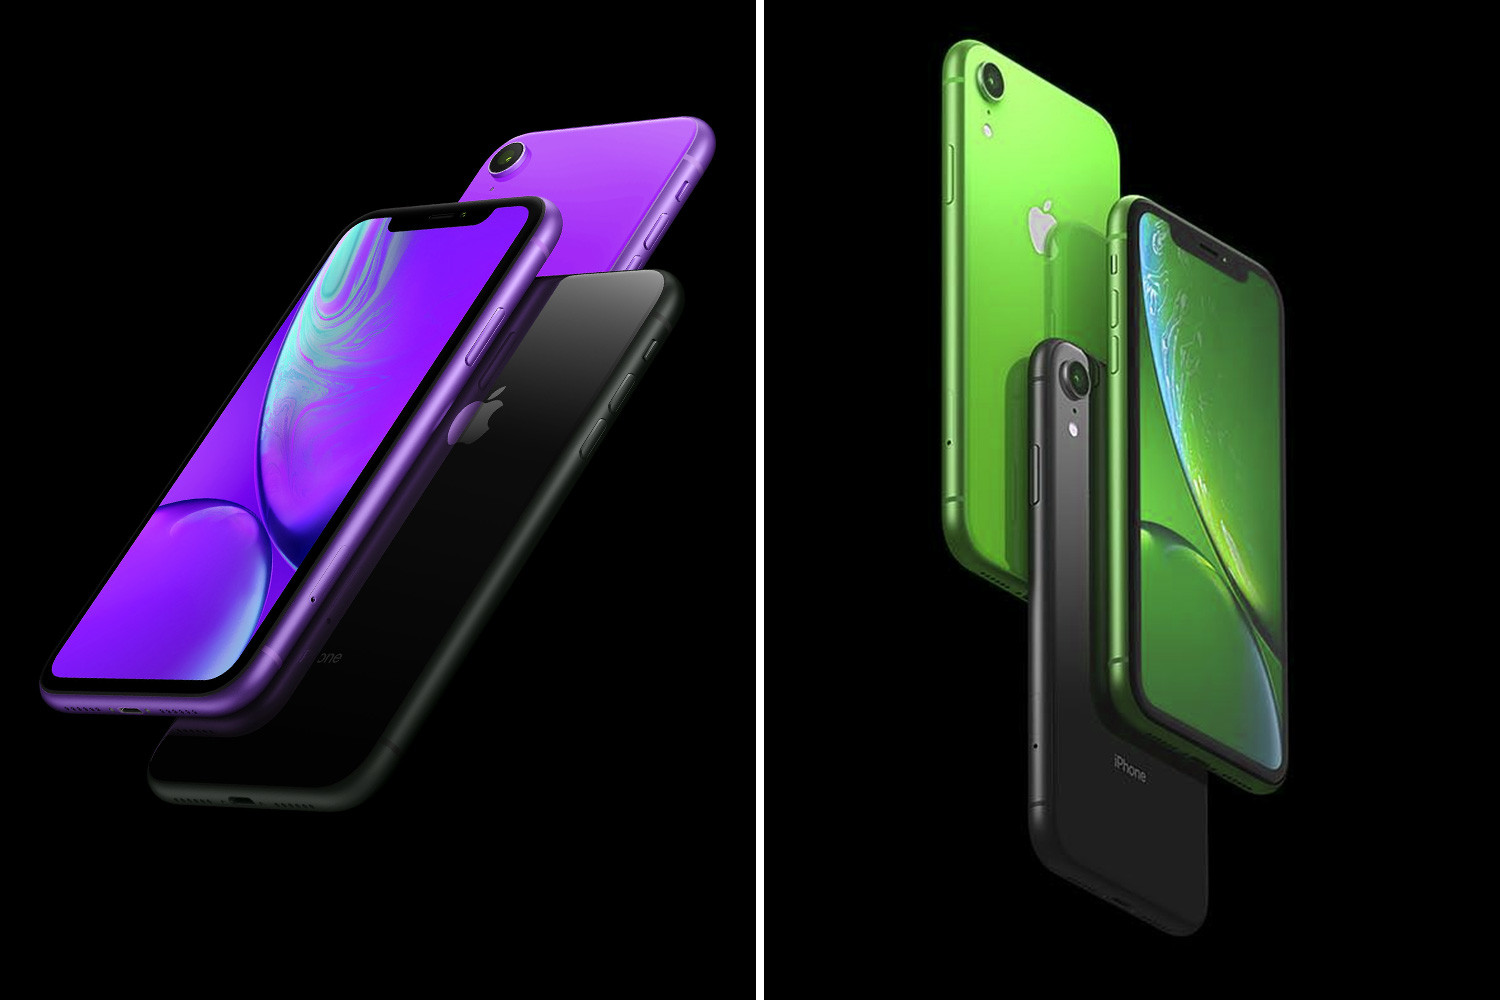  Awal tahun ini, AppleiPhone baru dikabarkan akan mendapatkan lavender baru dan paintjobs hijau